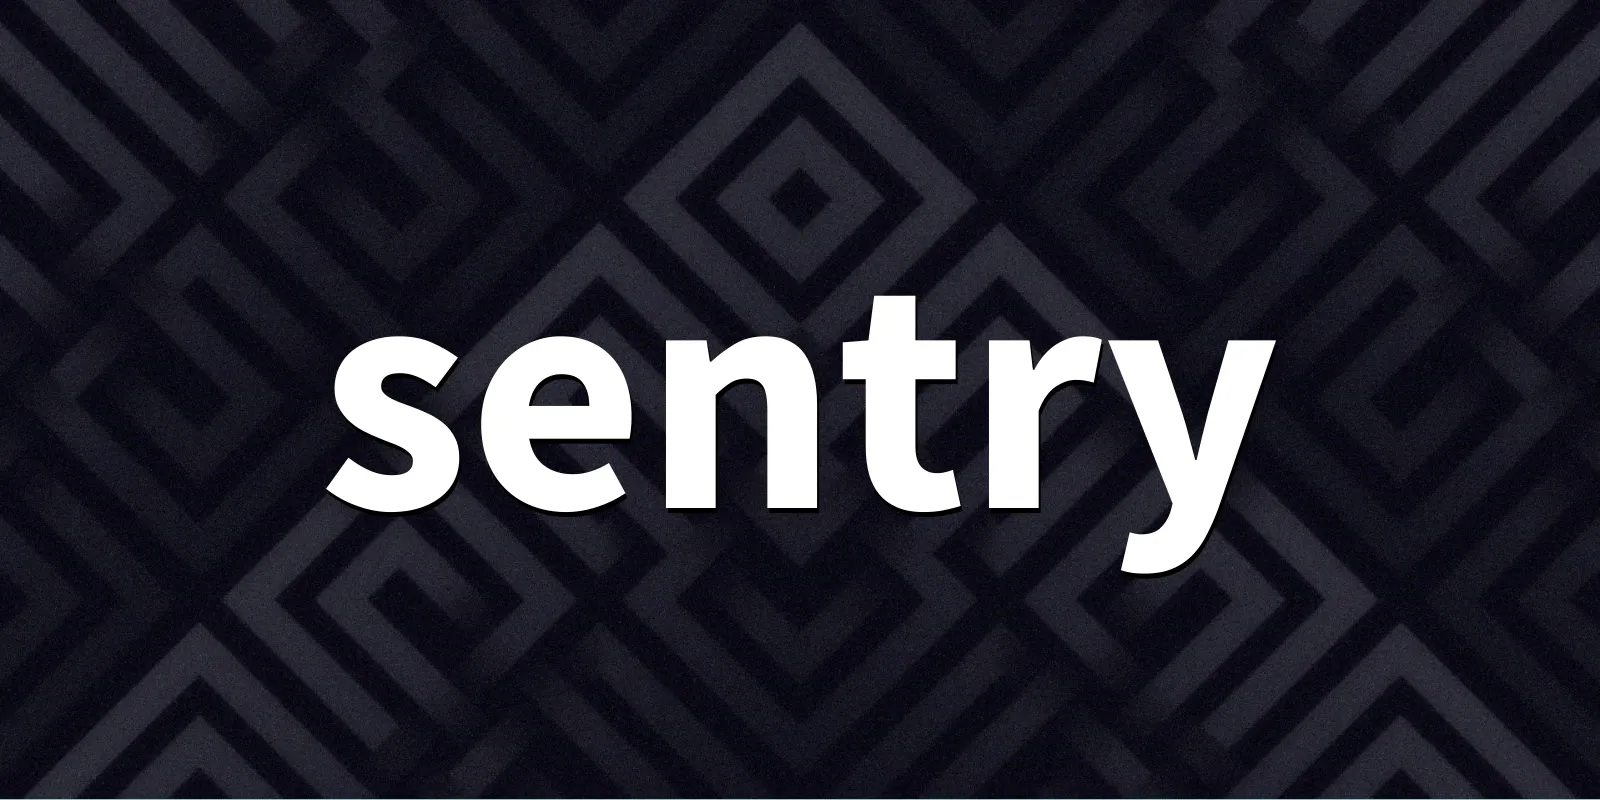 /pkg/s/sentry/sentry-banner.webp